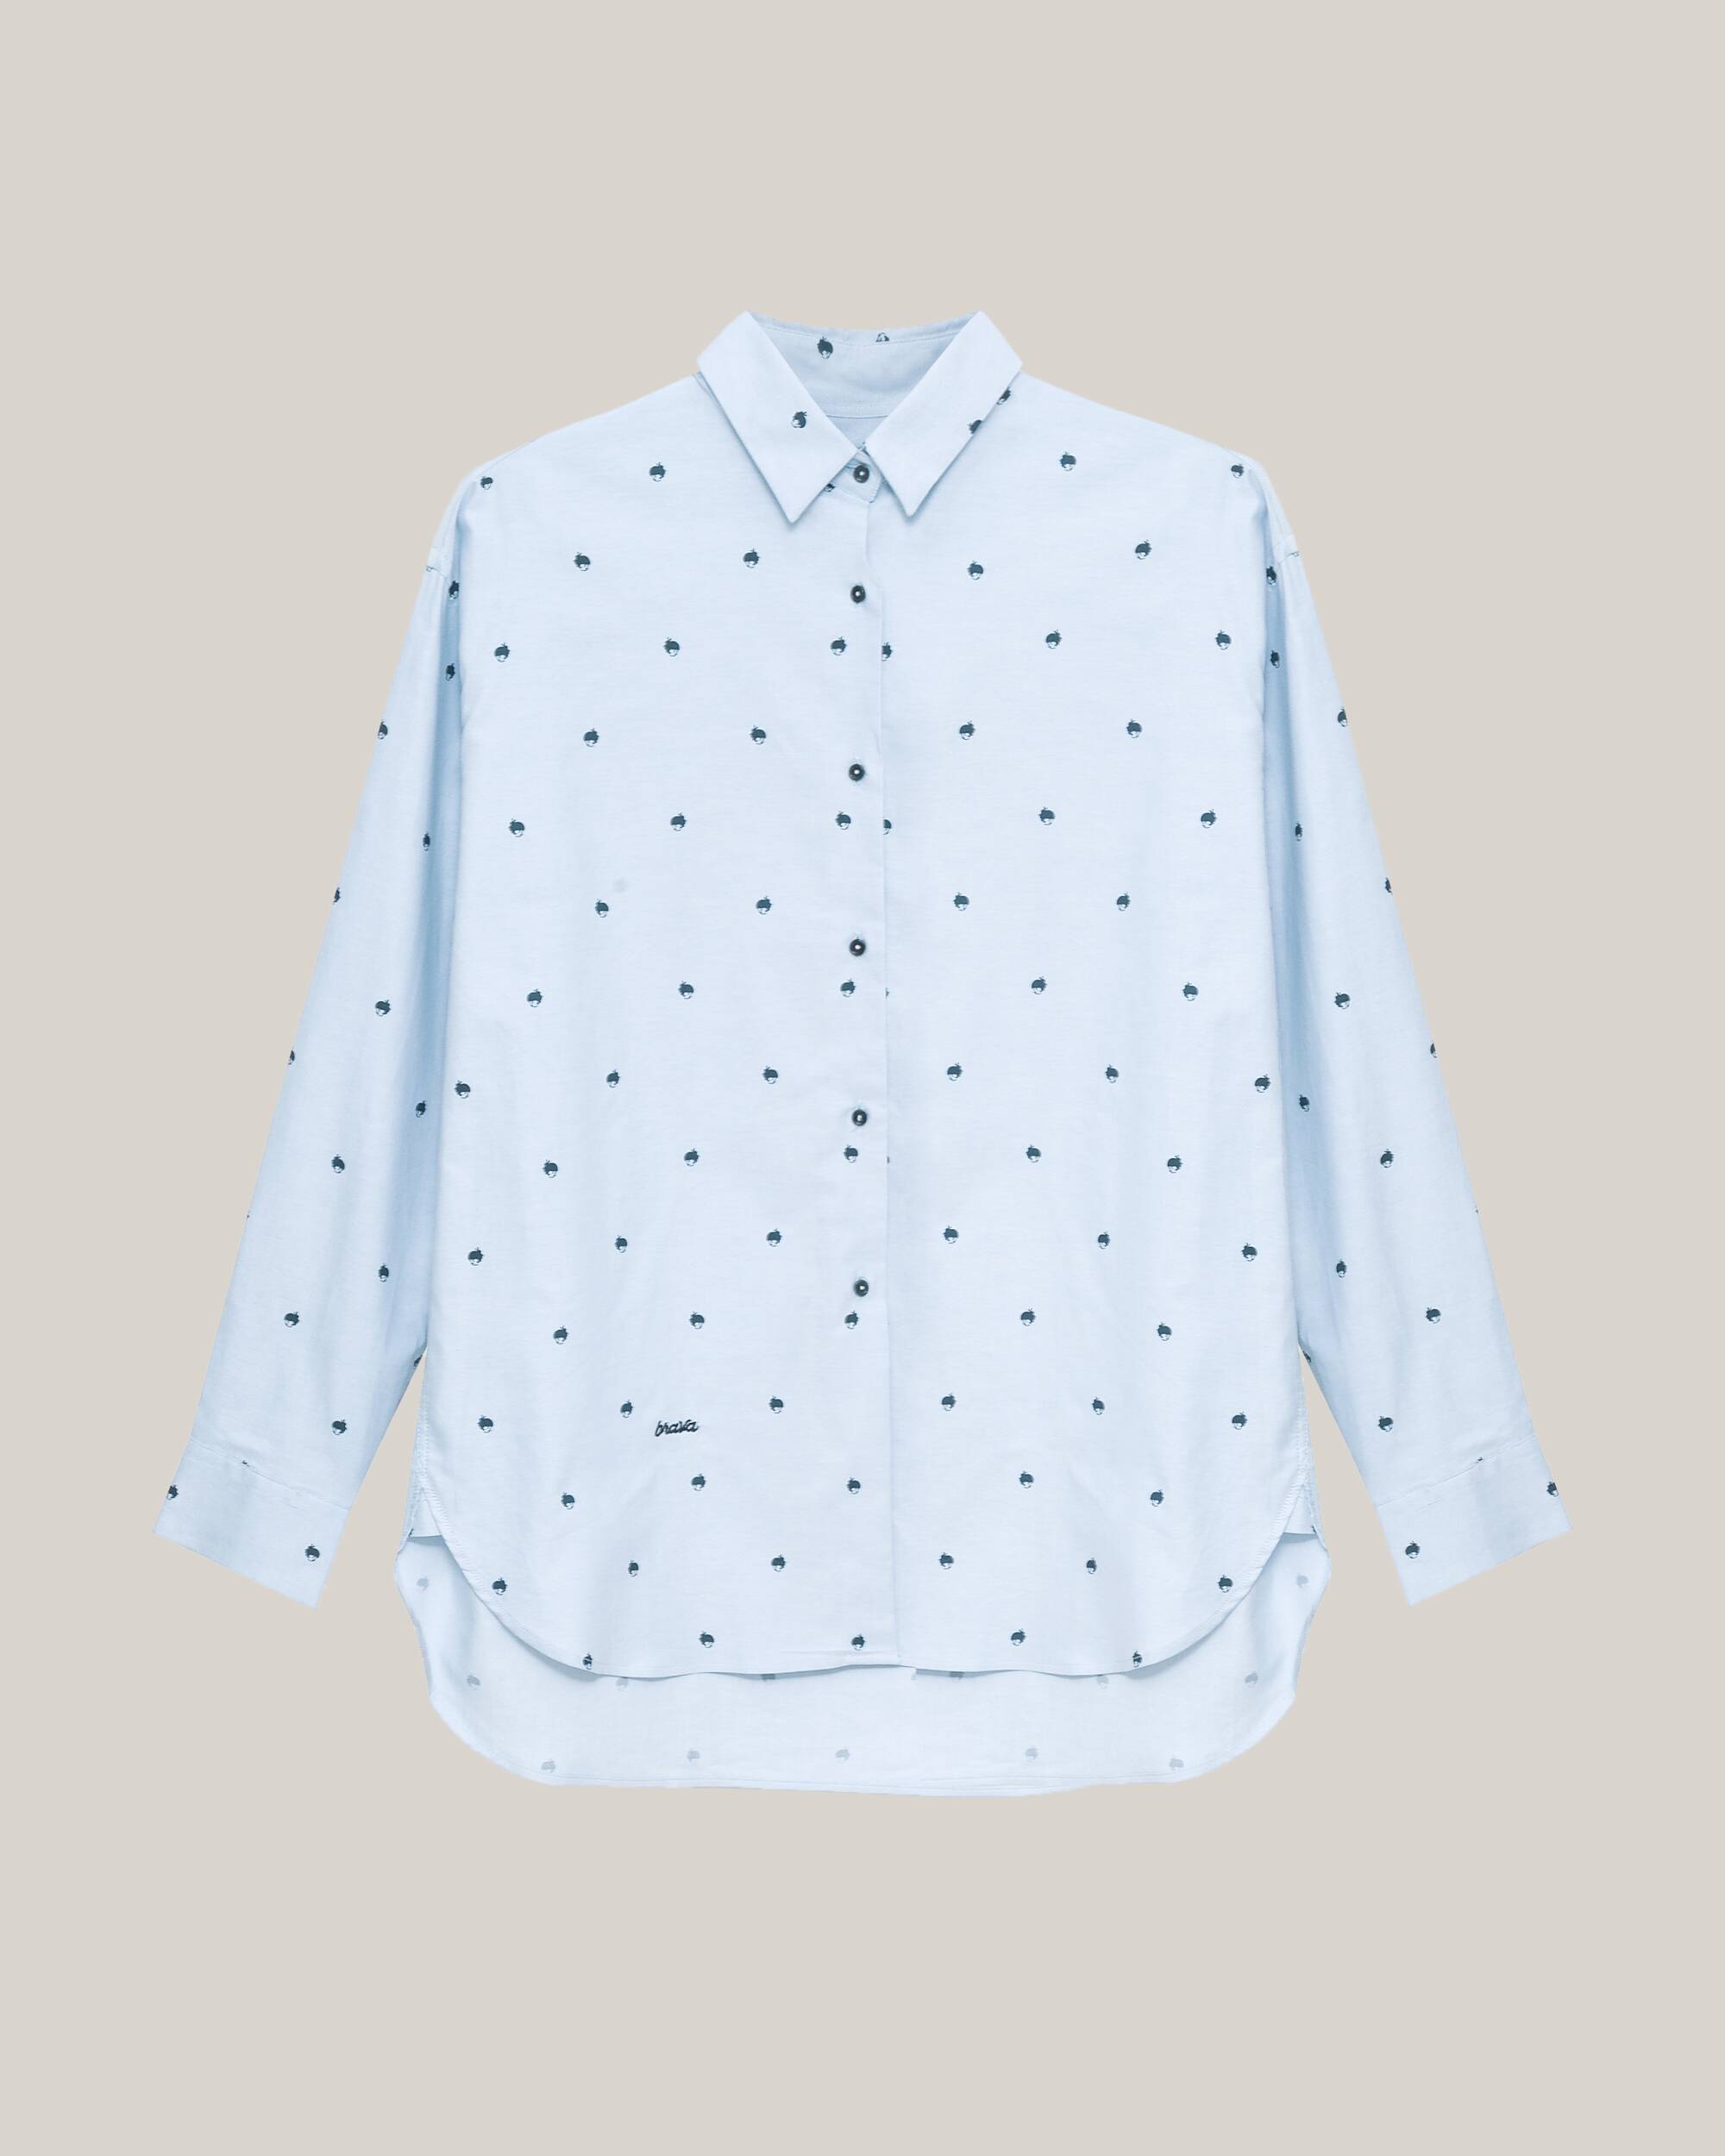 Hellblaue, bedruckte, langärmlige Bluse Yoko aus 100% Bio-Baumwolle von Brava Fabrics